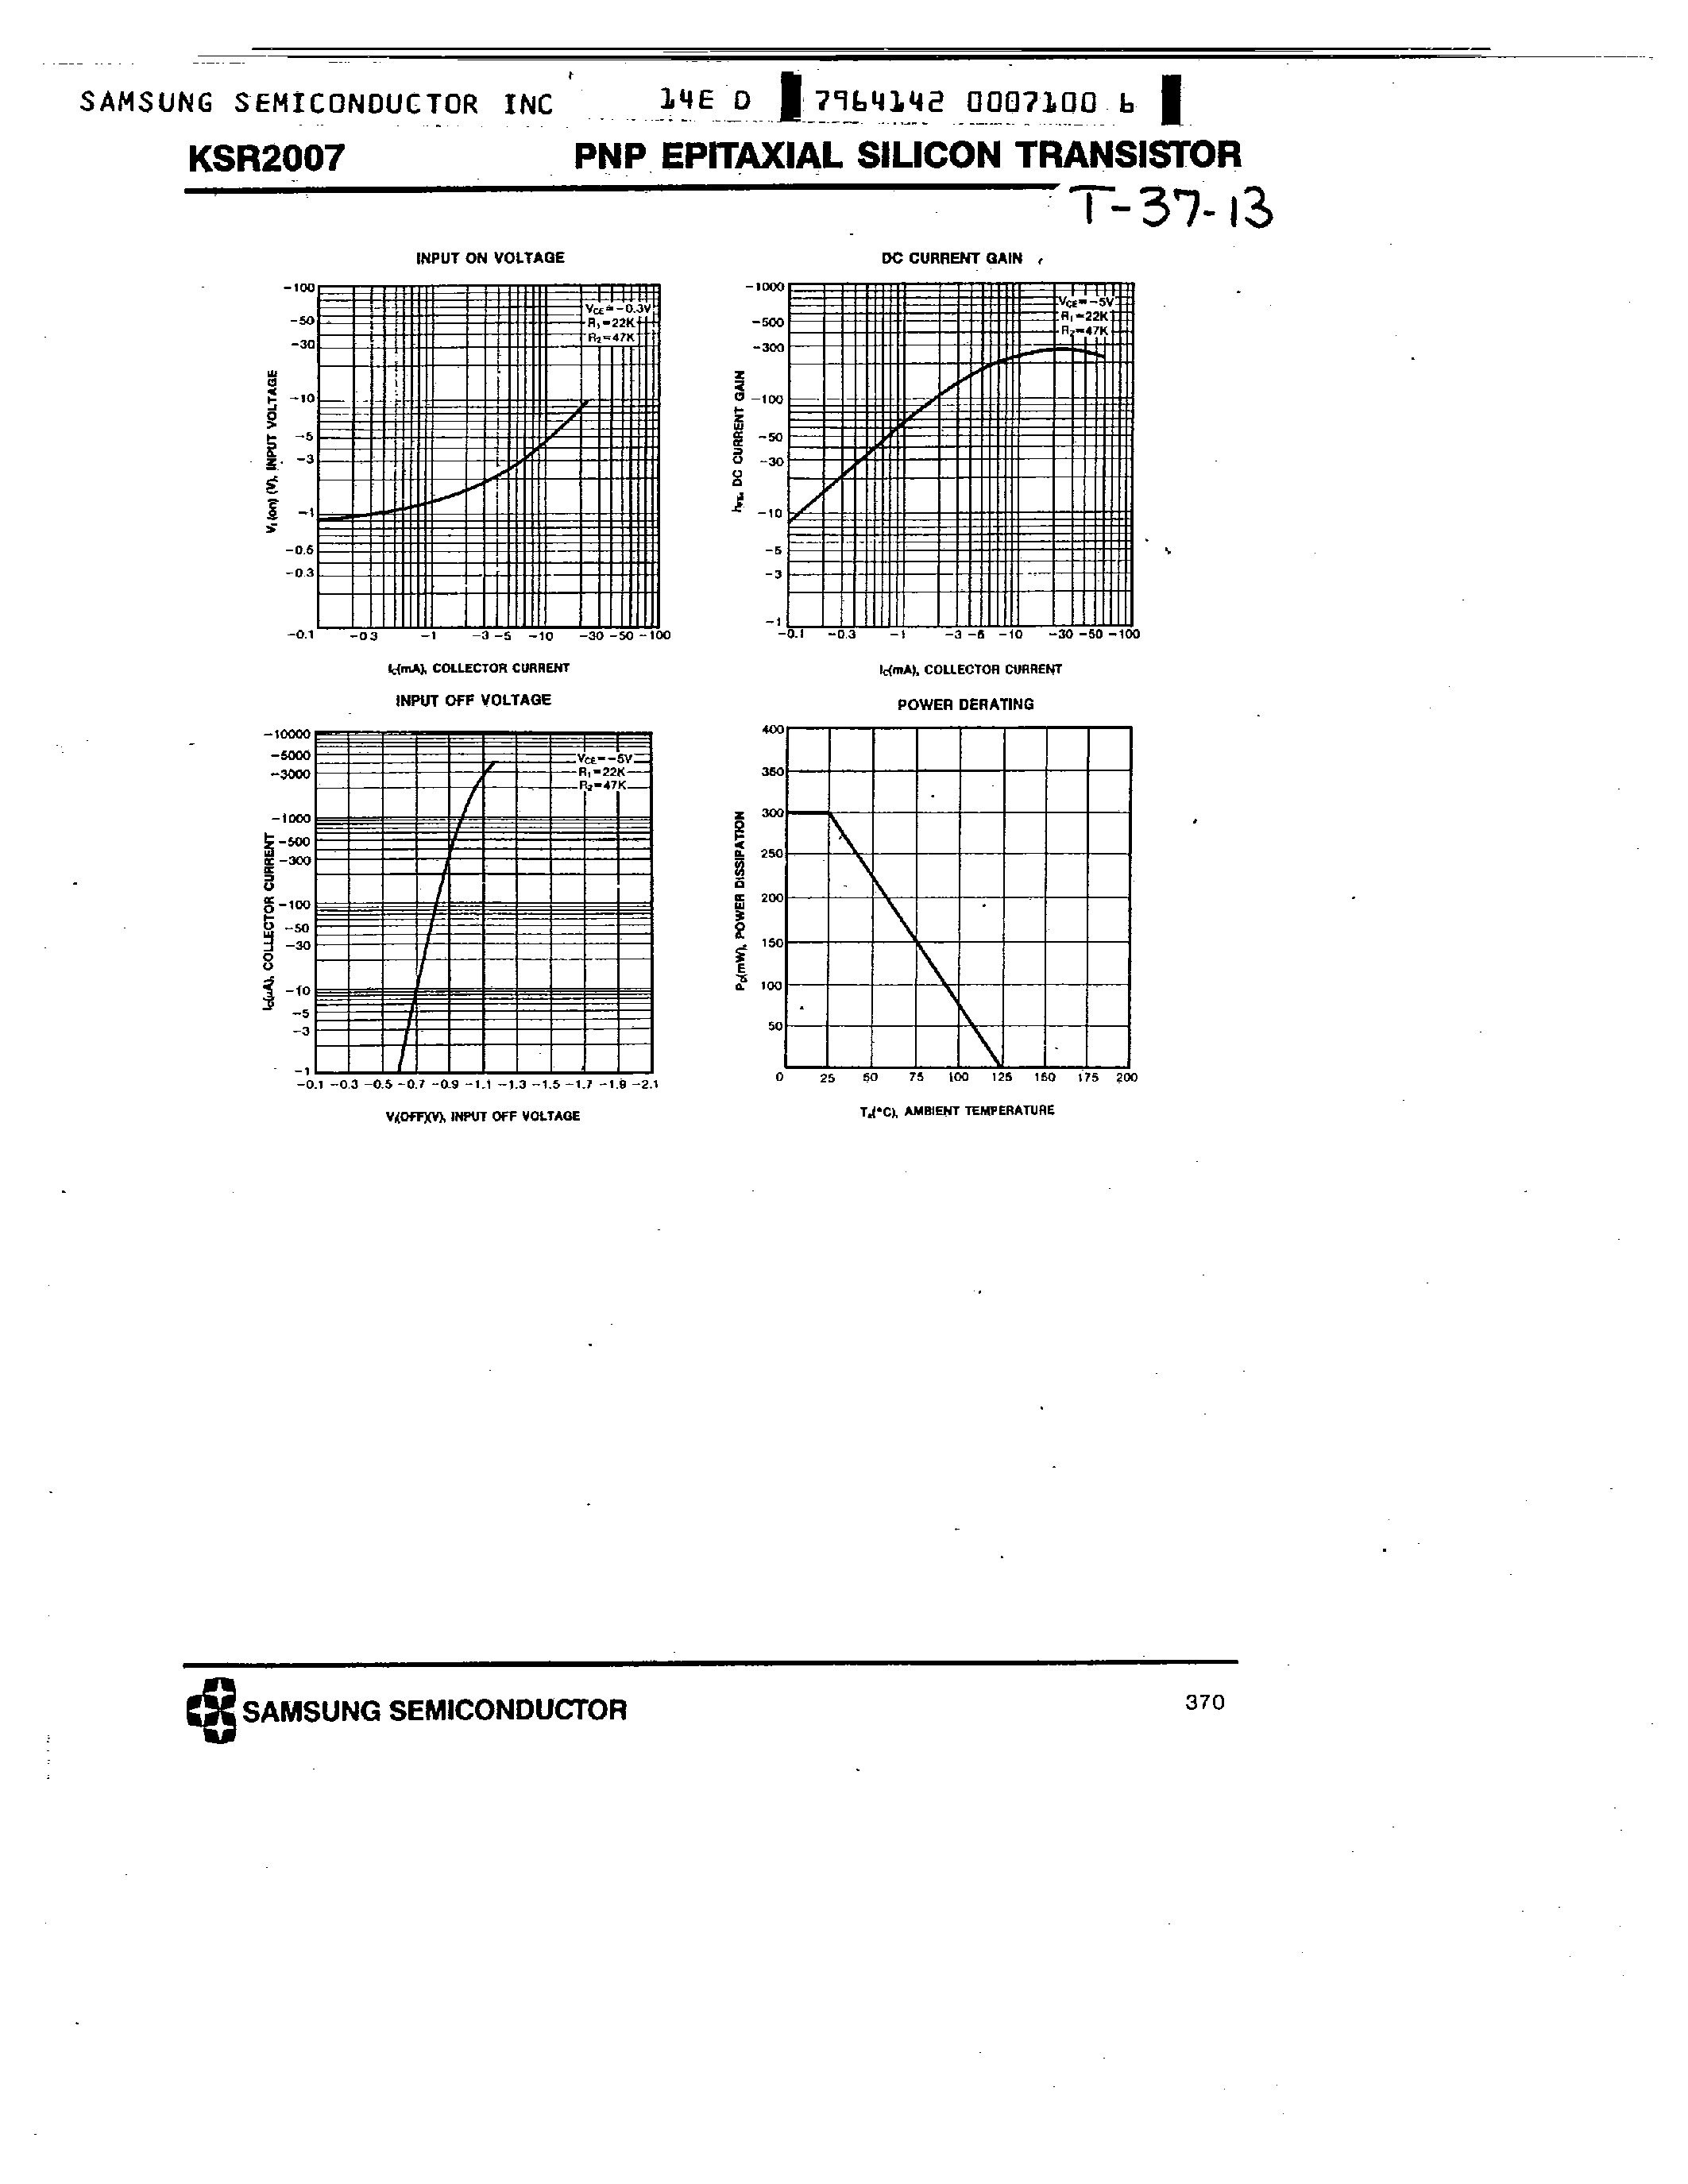 Datasheet KSR2007 - PNP (SWITCHING APPLICATION) page 2